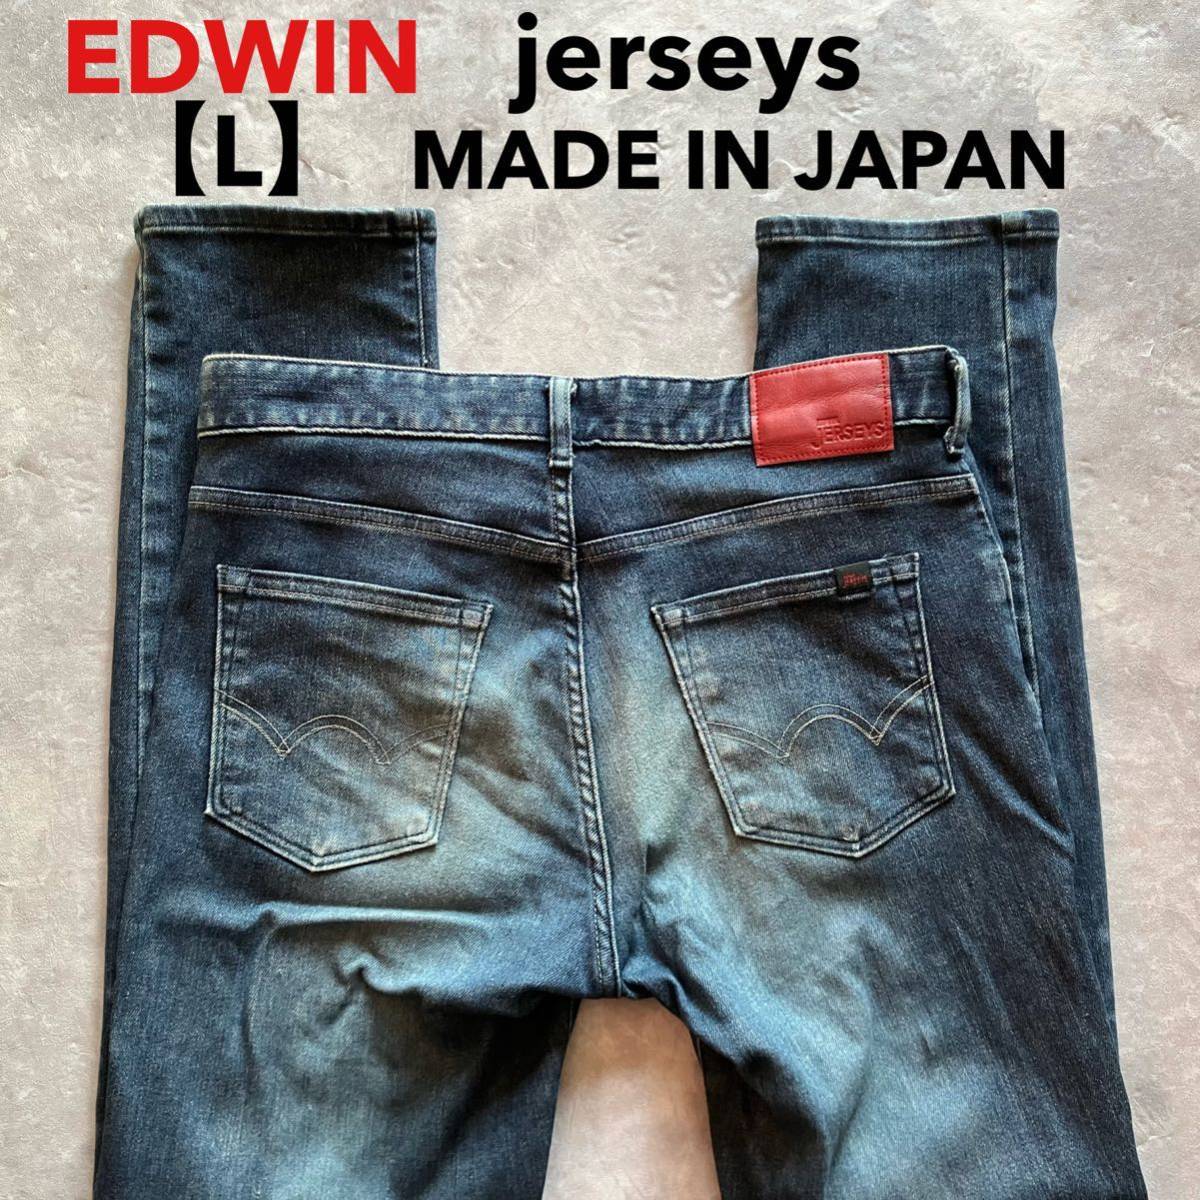  быстрое решение размер надпись L EDWIN Edwin мягкость стрейч Denim Jerseys jerseys тонкий конический No.ER32 MADE IN JAPAN